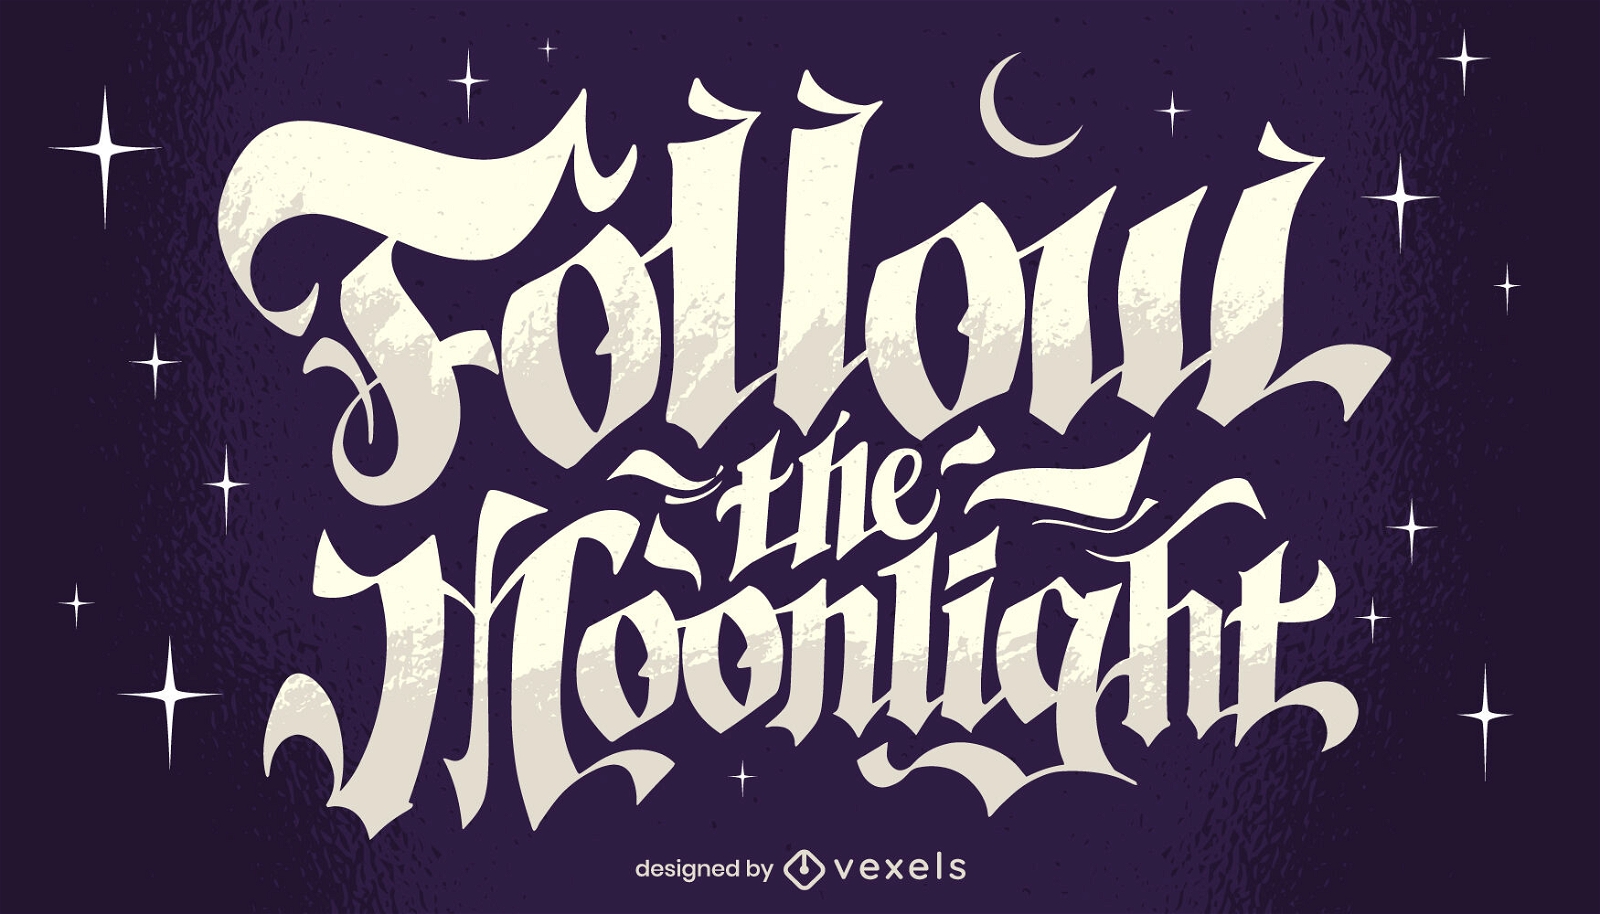 Folgen Sie der Mondlicht-Zitat-Illustration